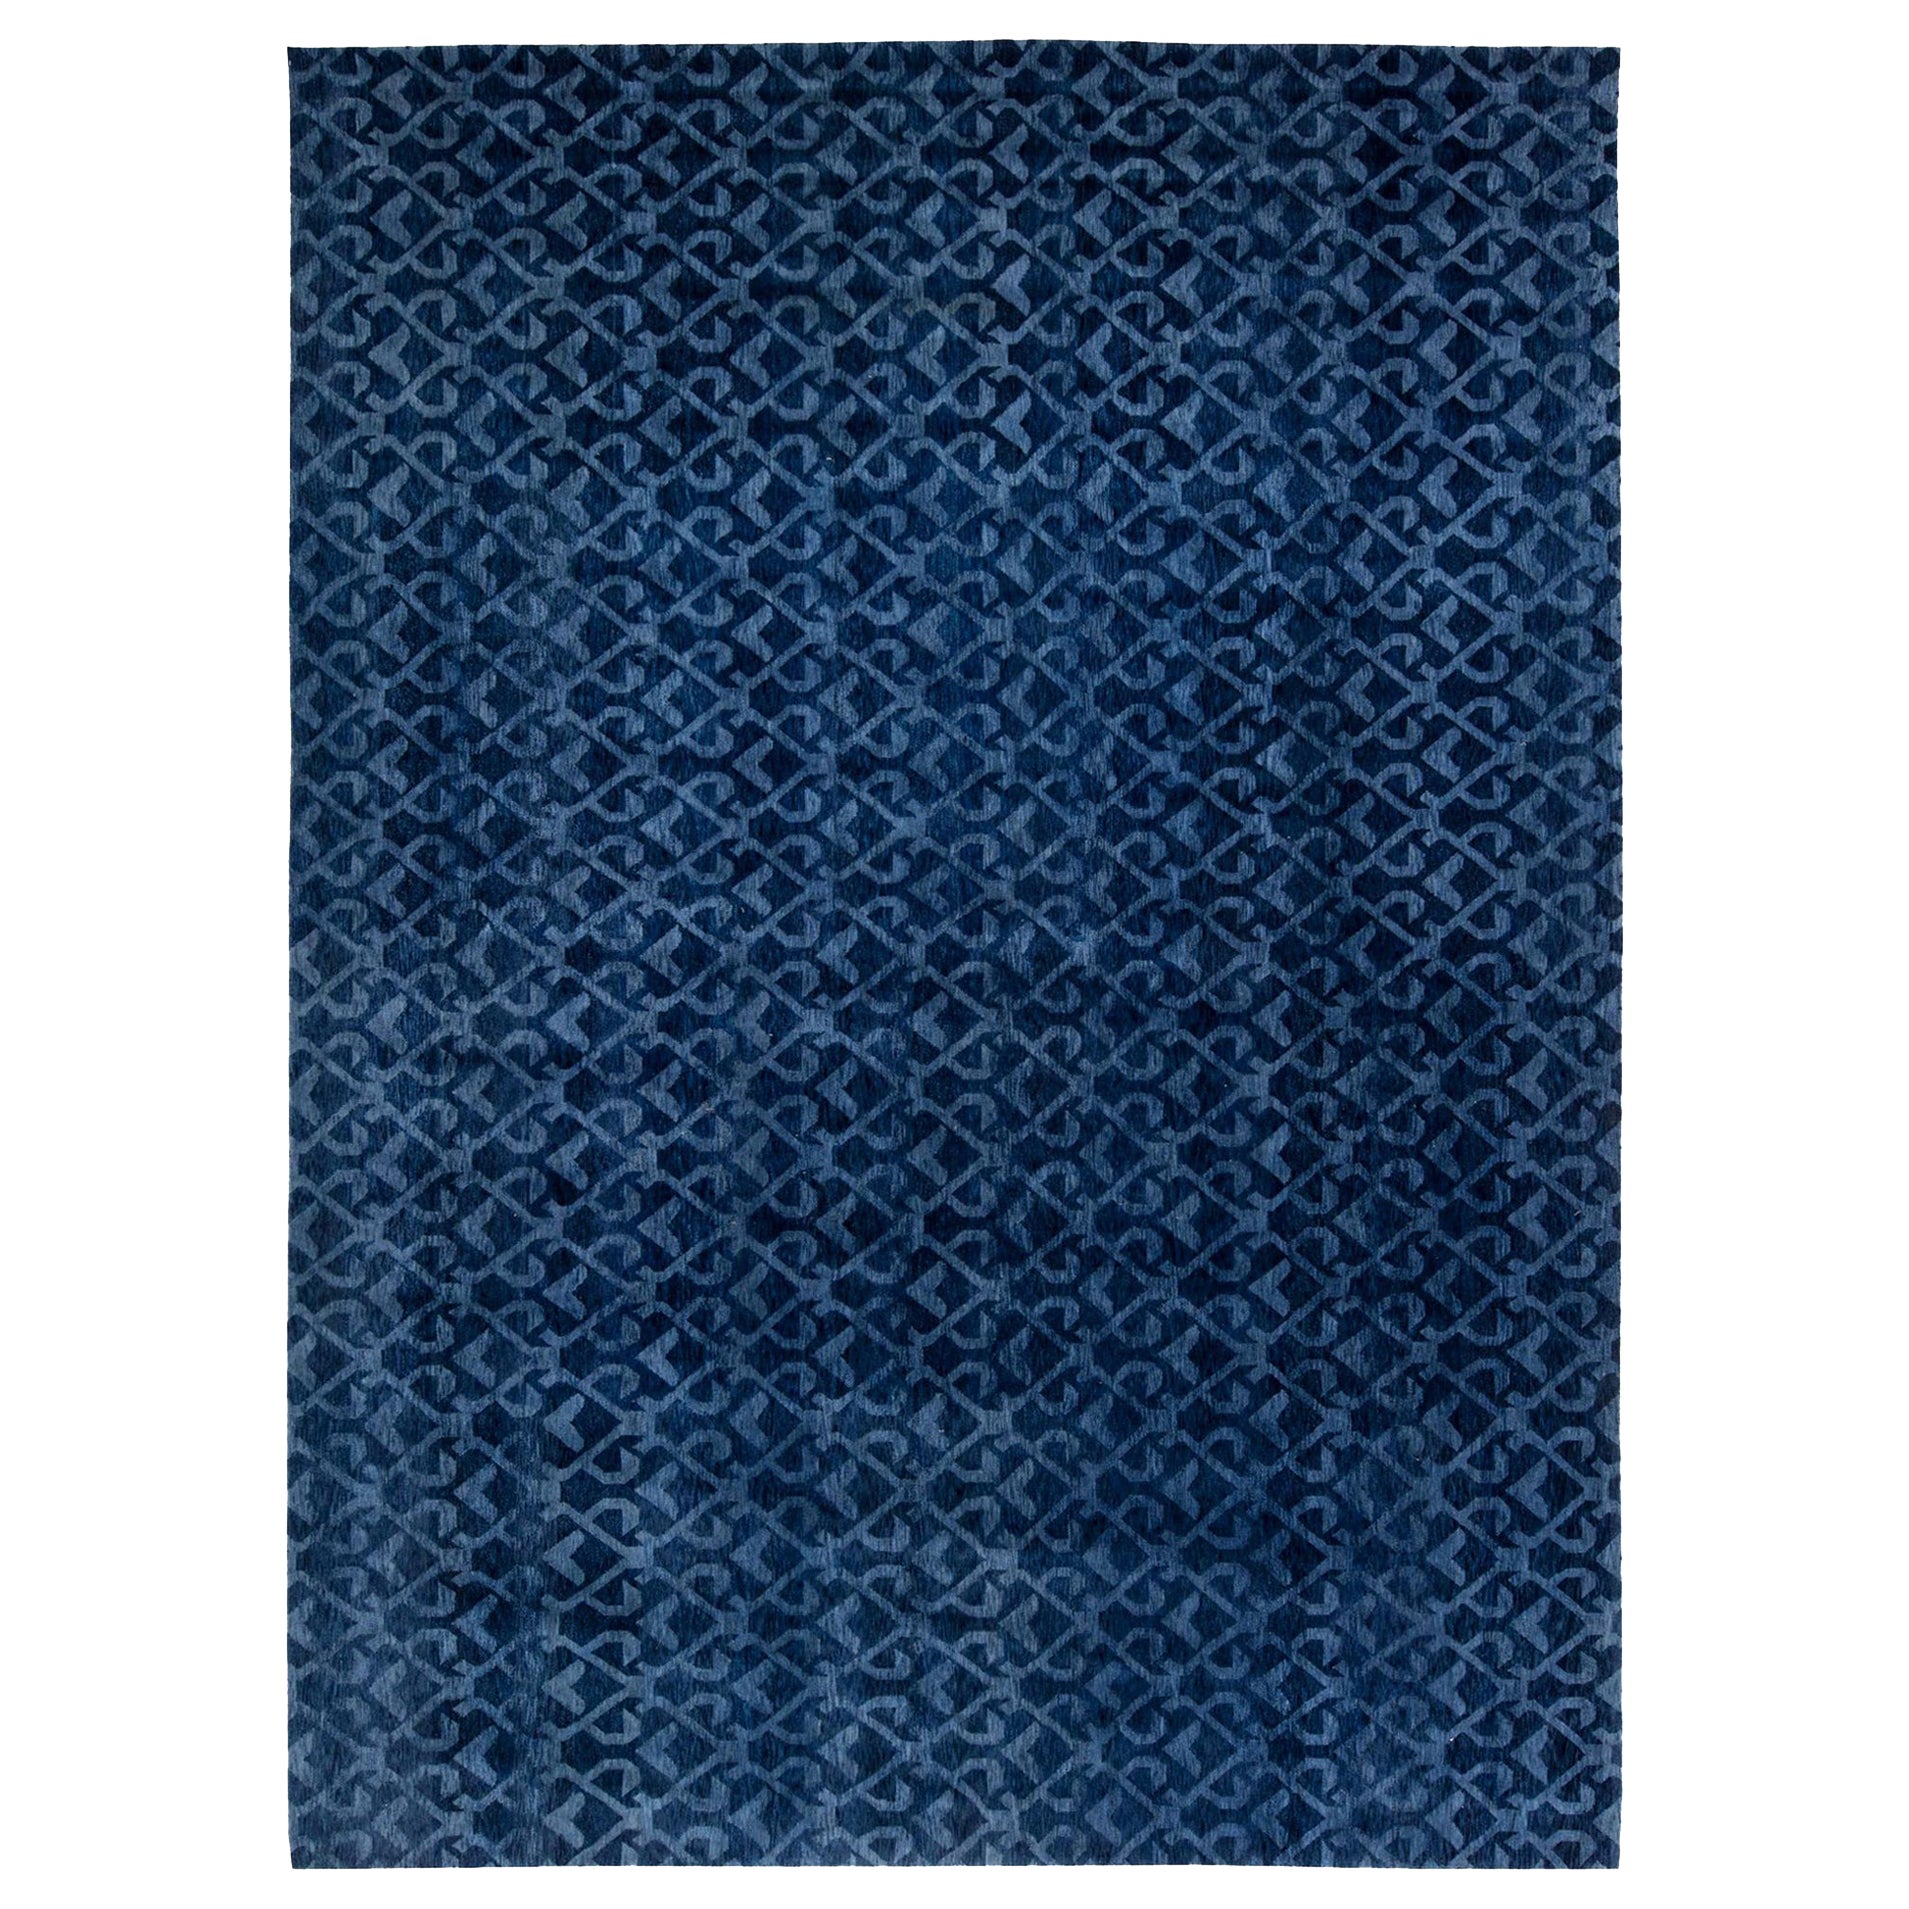 Contemporary Pashmina Euro Blue Rug by Doris Leslie Blau